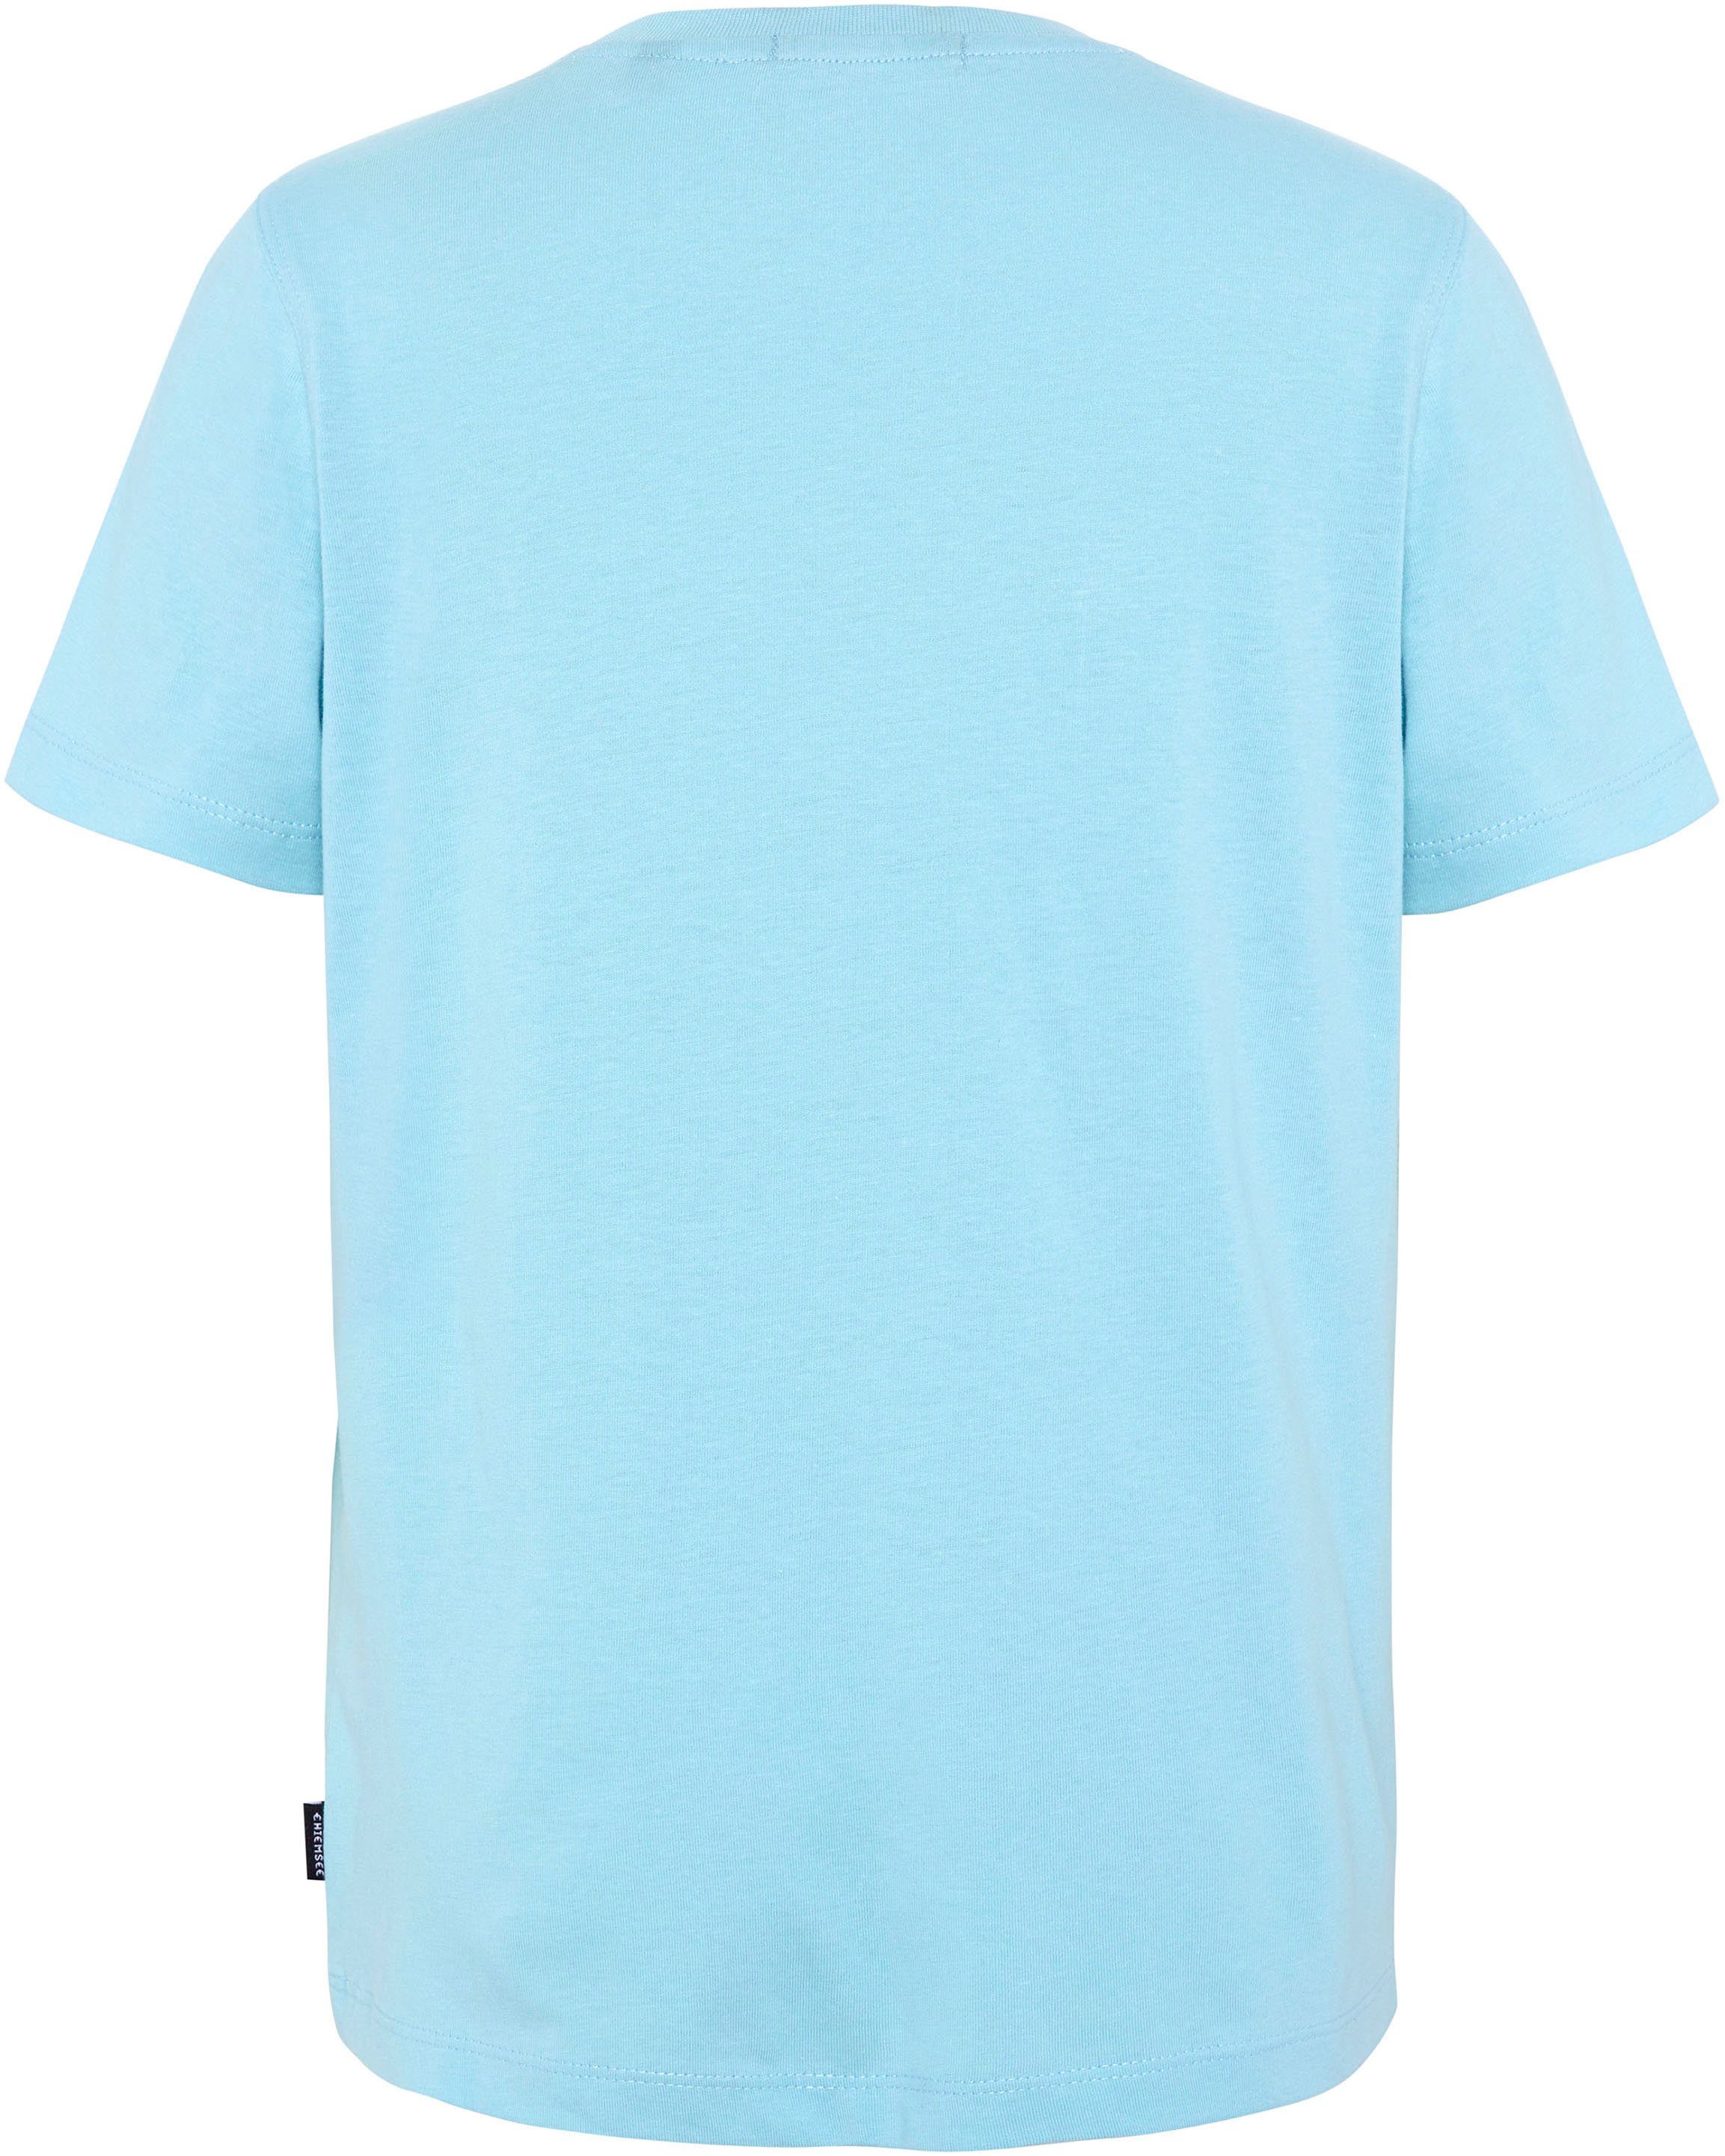 blau T-Shirt Chiemsee